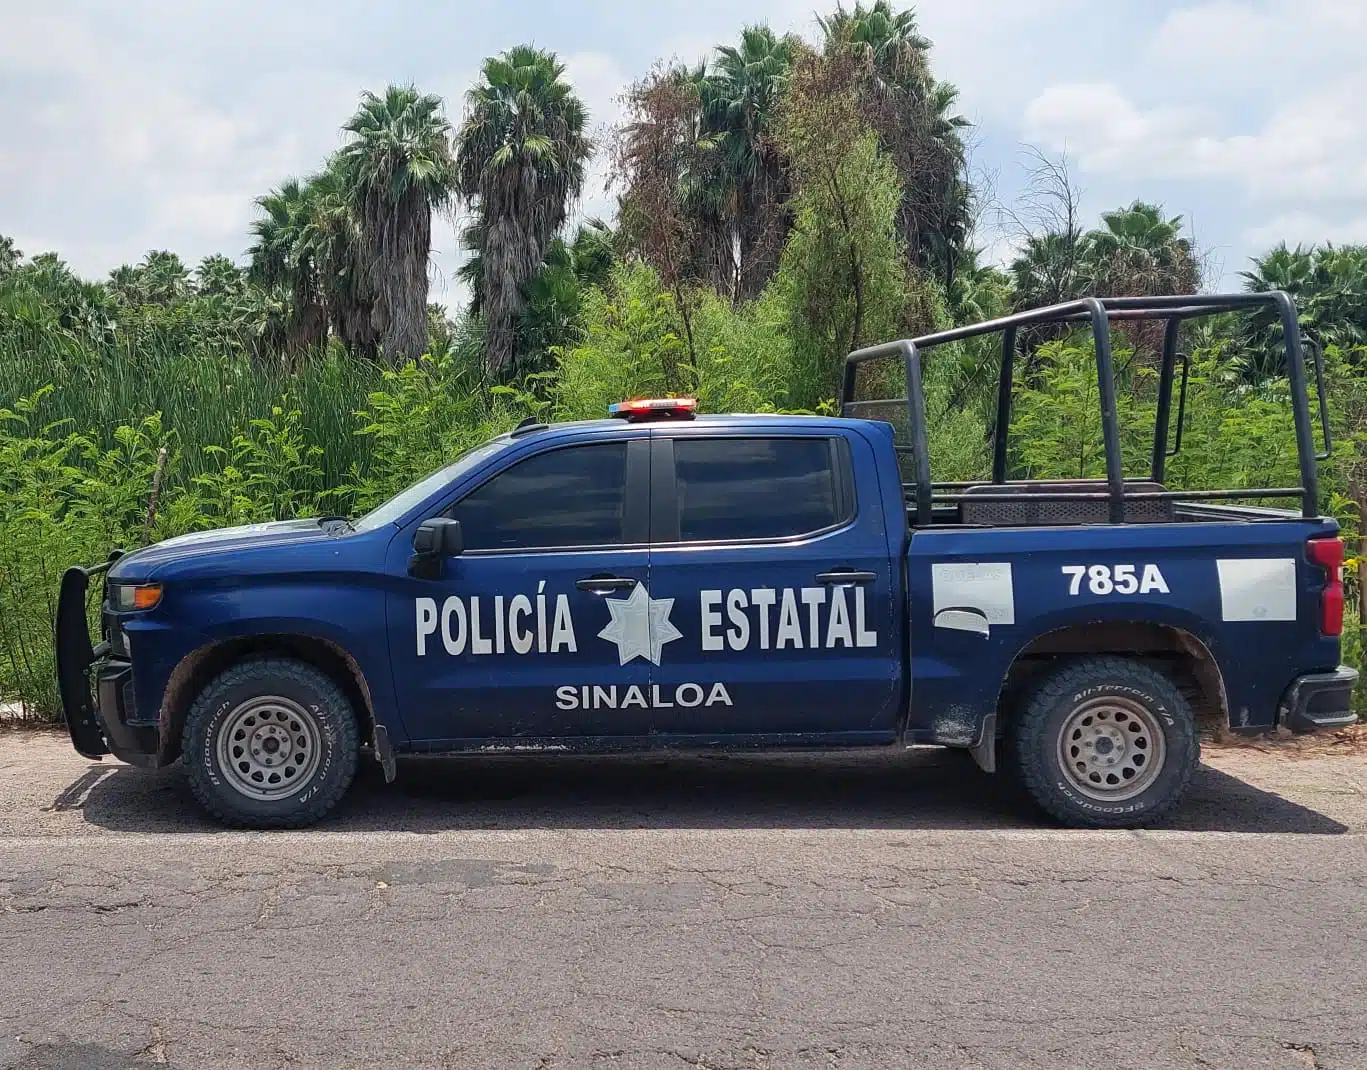 Camioneta de la policía estatal